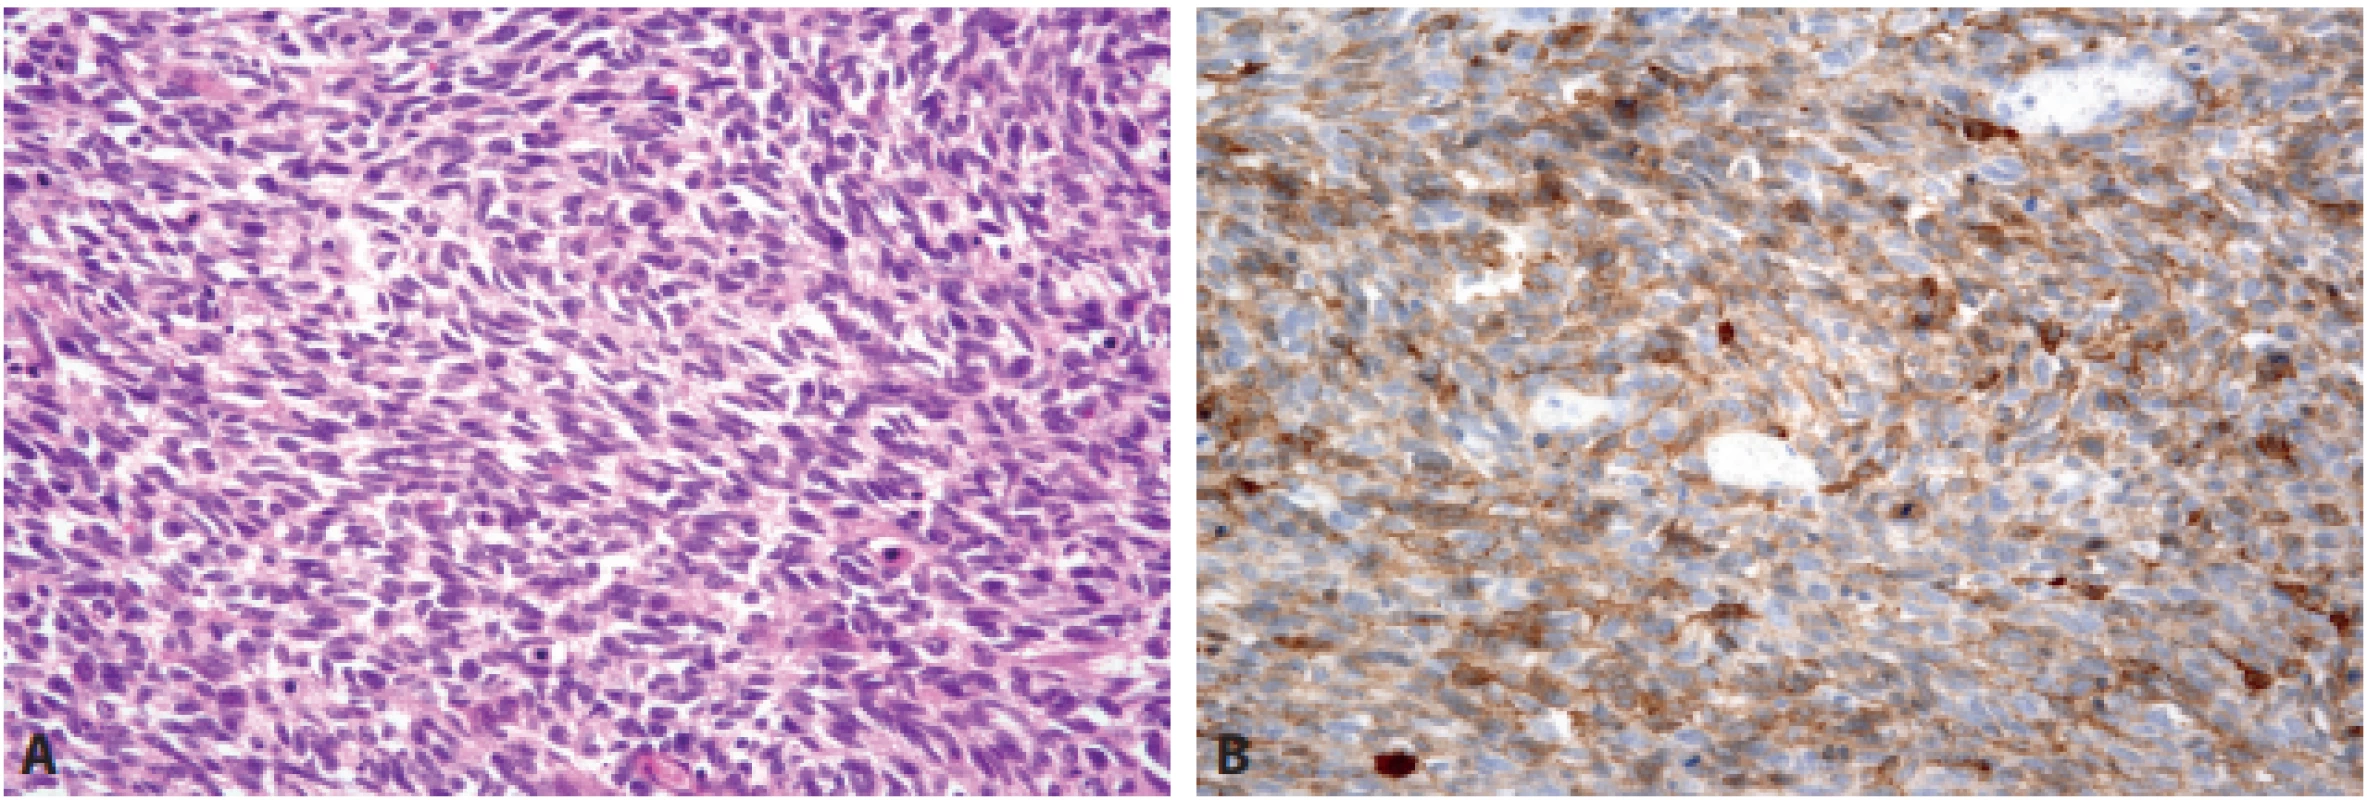  Sarkomatoidní karcinom. Sarkomatoidní karcinom tvořený vřetenitými i  epiteloidními buňkami může v  gastrointestinálním traktu
napodobovat GIST (A – HE, 200x), zejména když jeho buňky exprimují antigen CD117 (B – 200x).